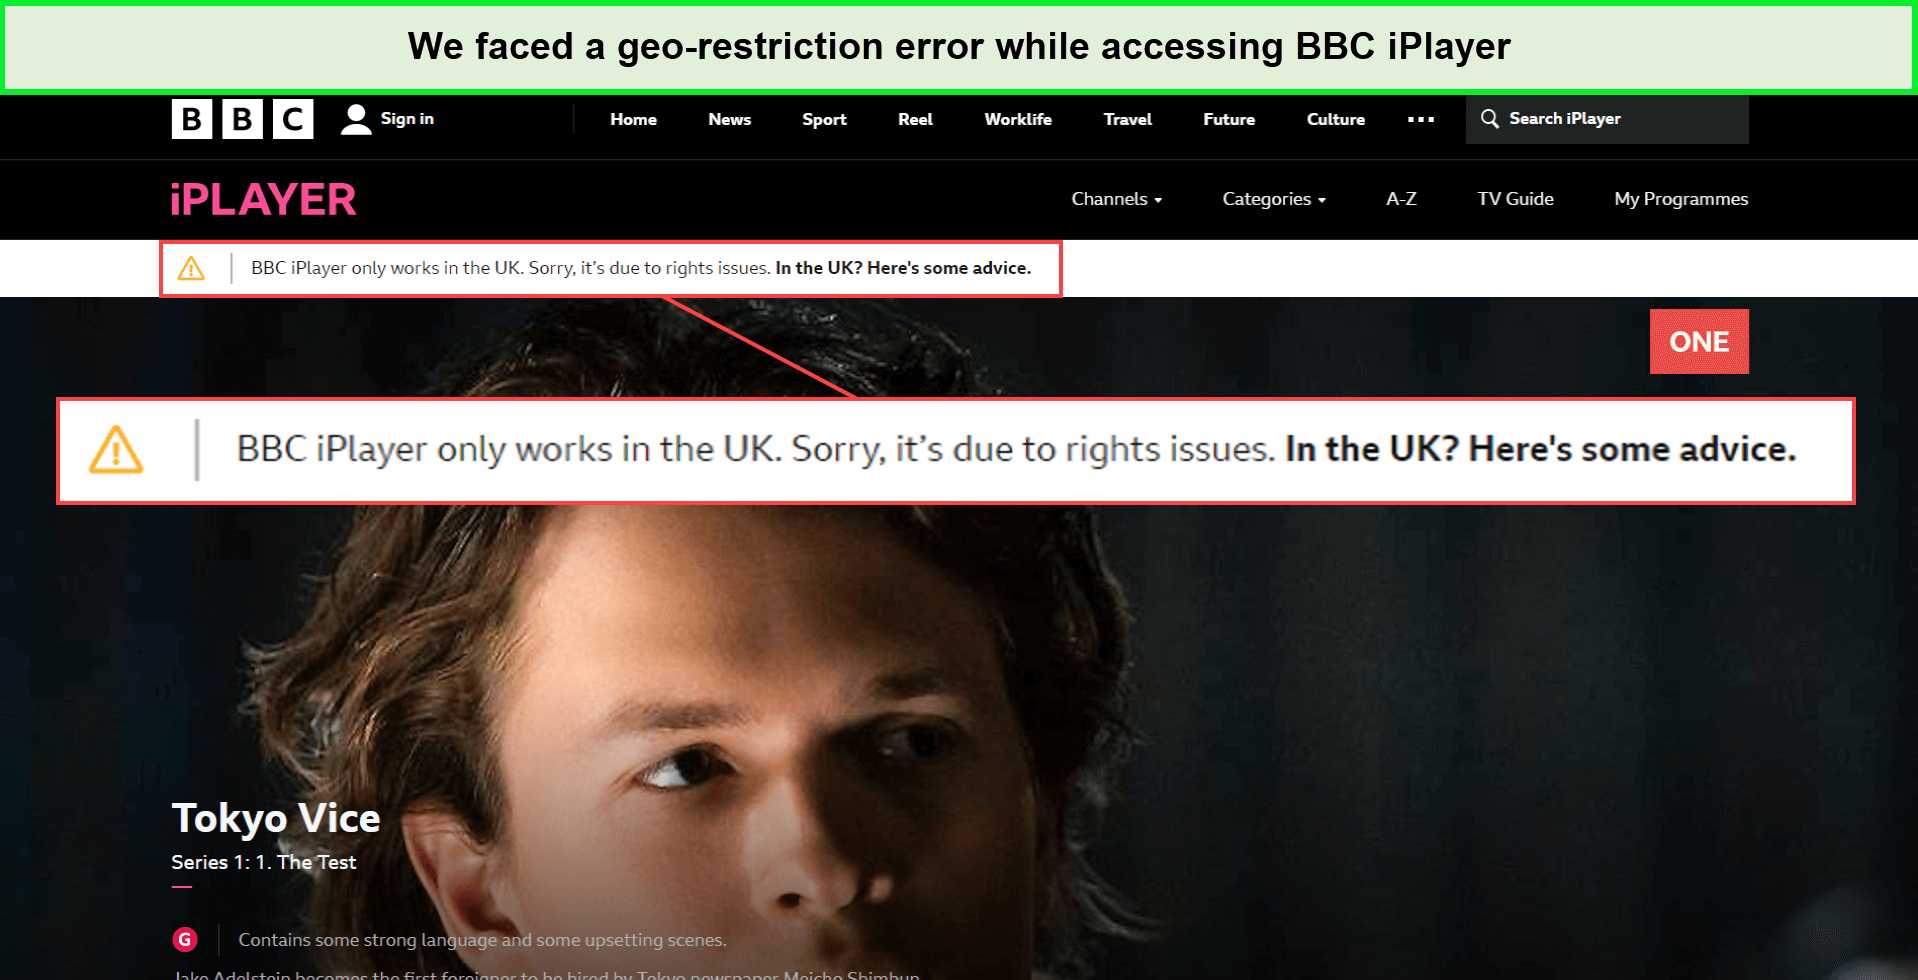 bbc-iplayer-geo-restriction-error-in-Netherlands